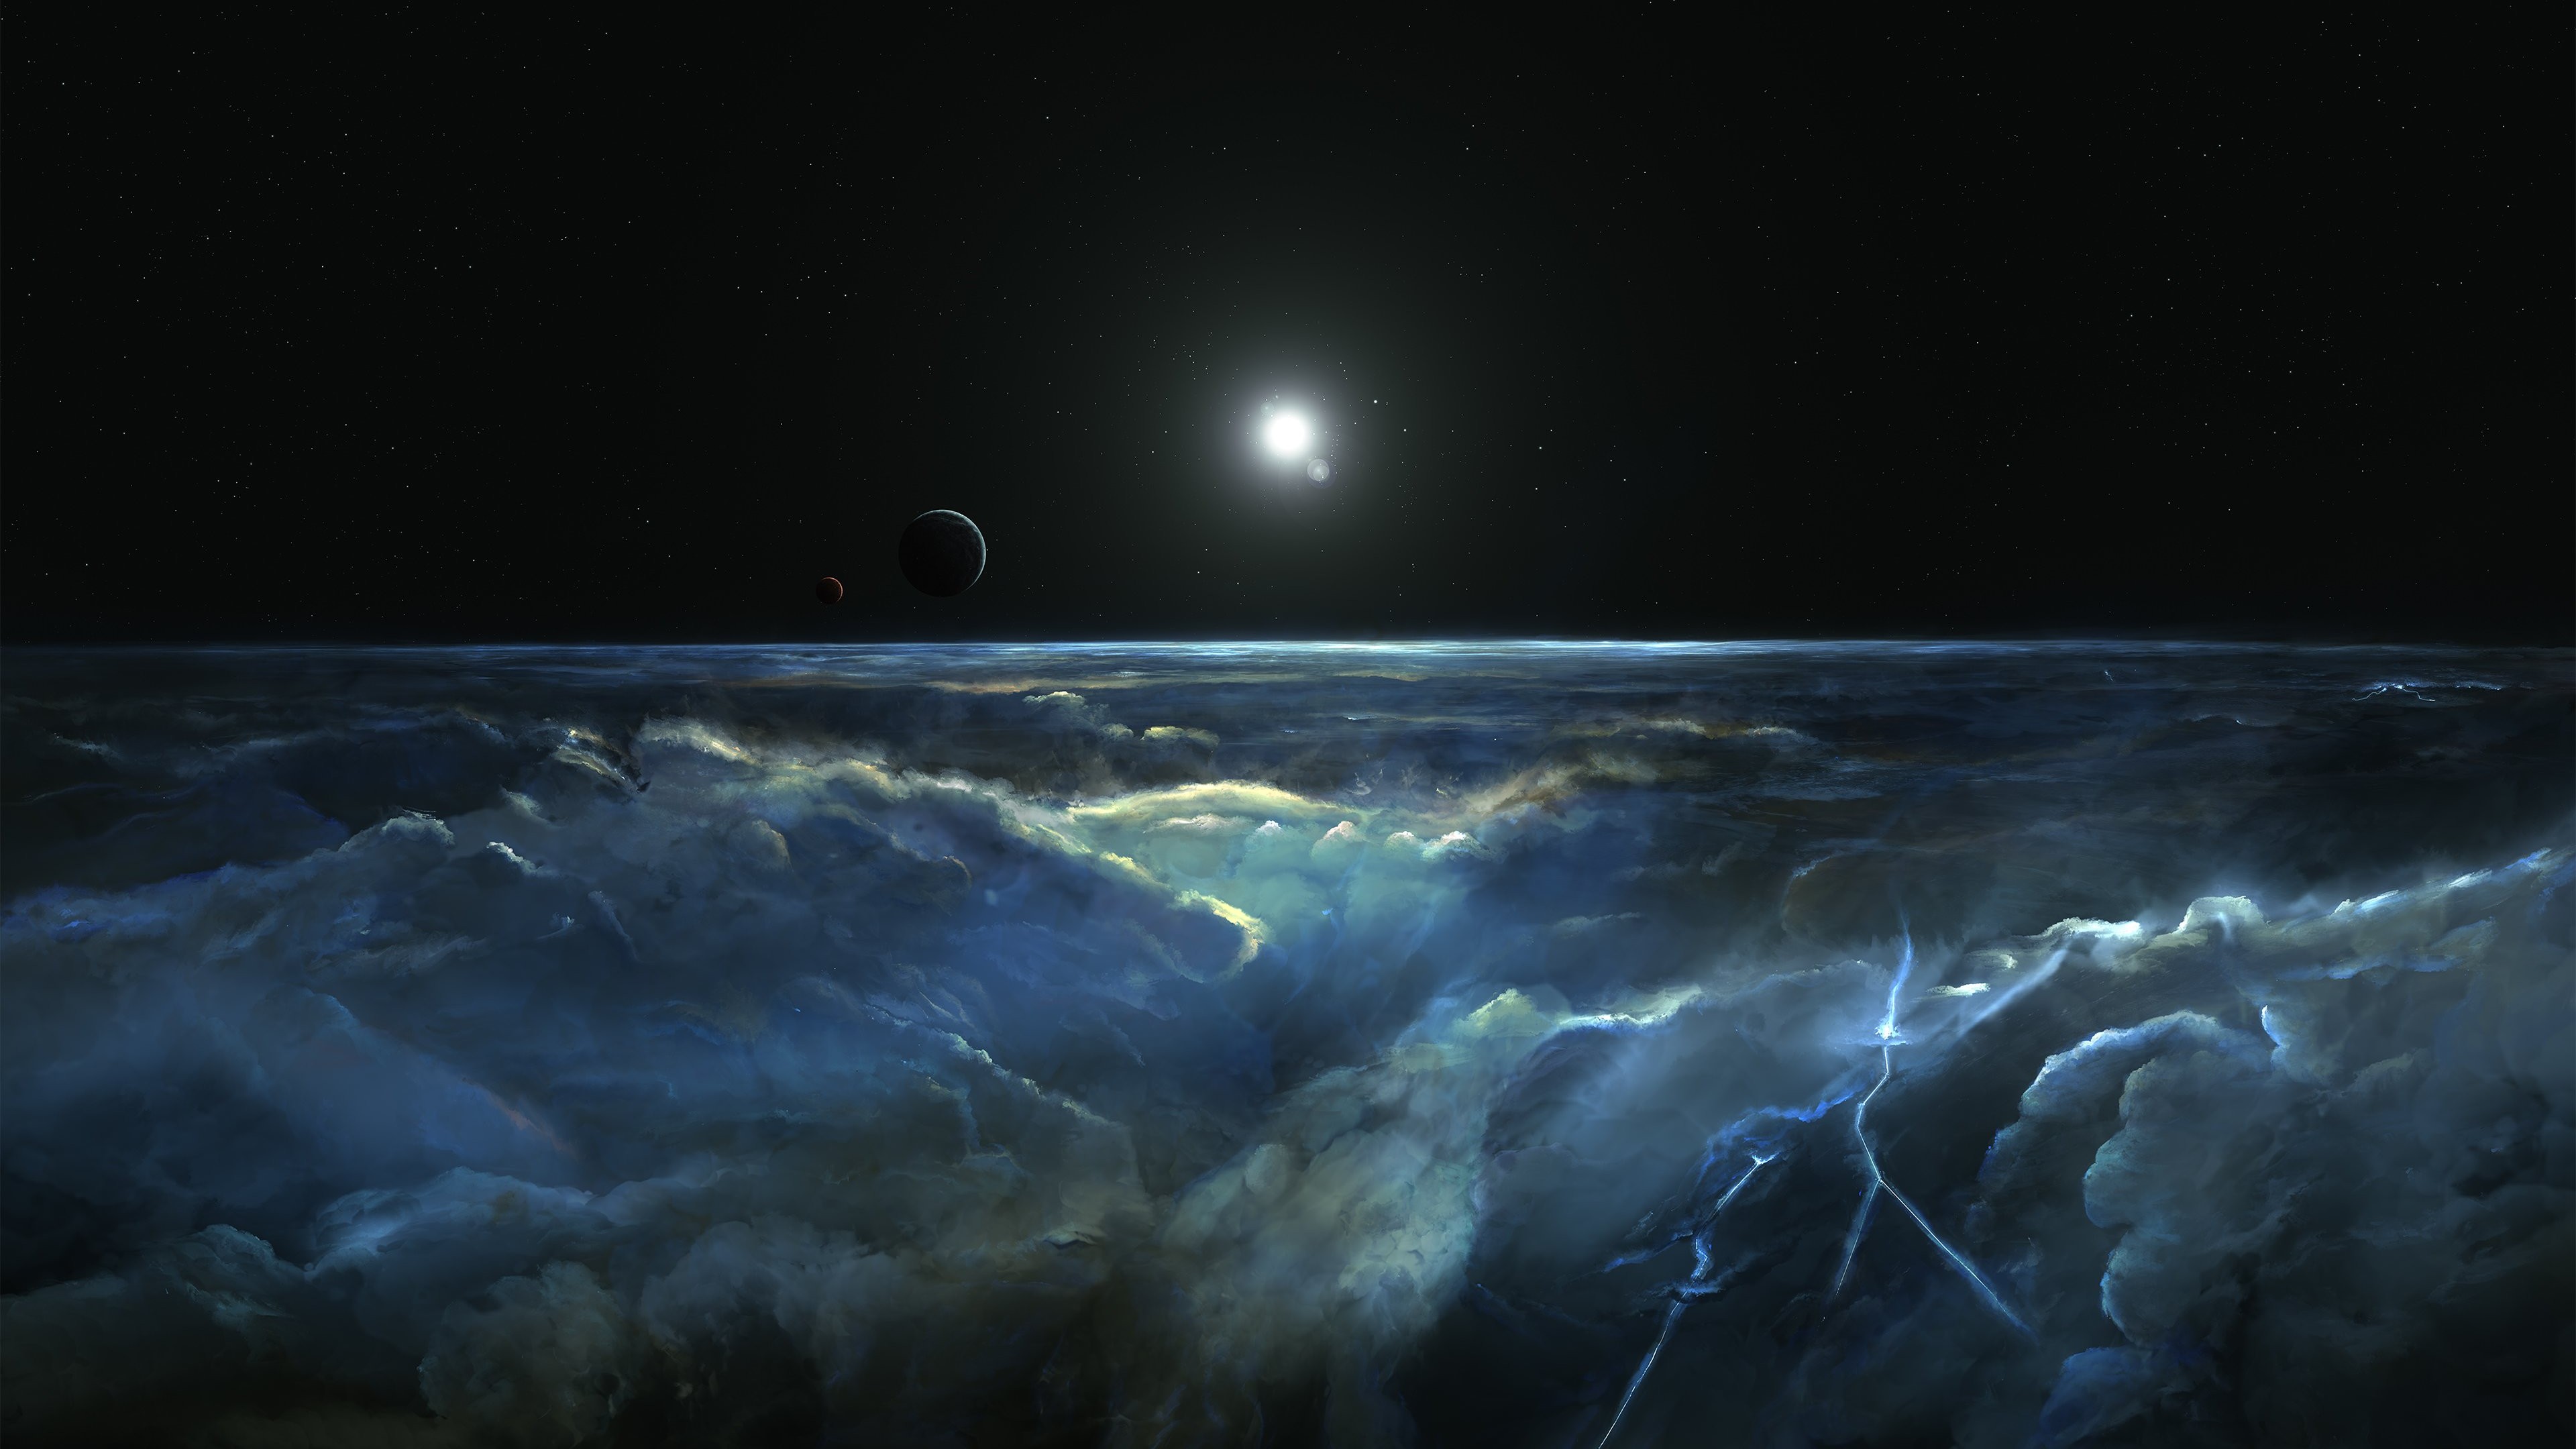 Stormy Atmosphere of Merphlyn Wallpaper for Desktop 4K 3840x2160